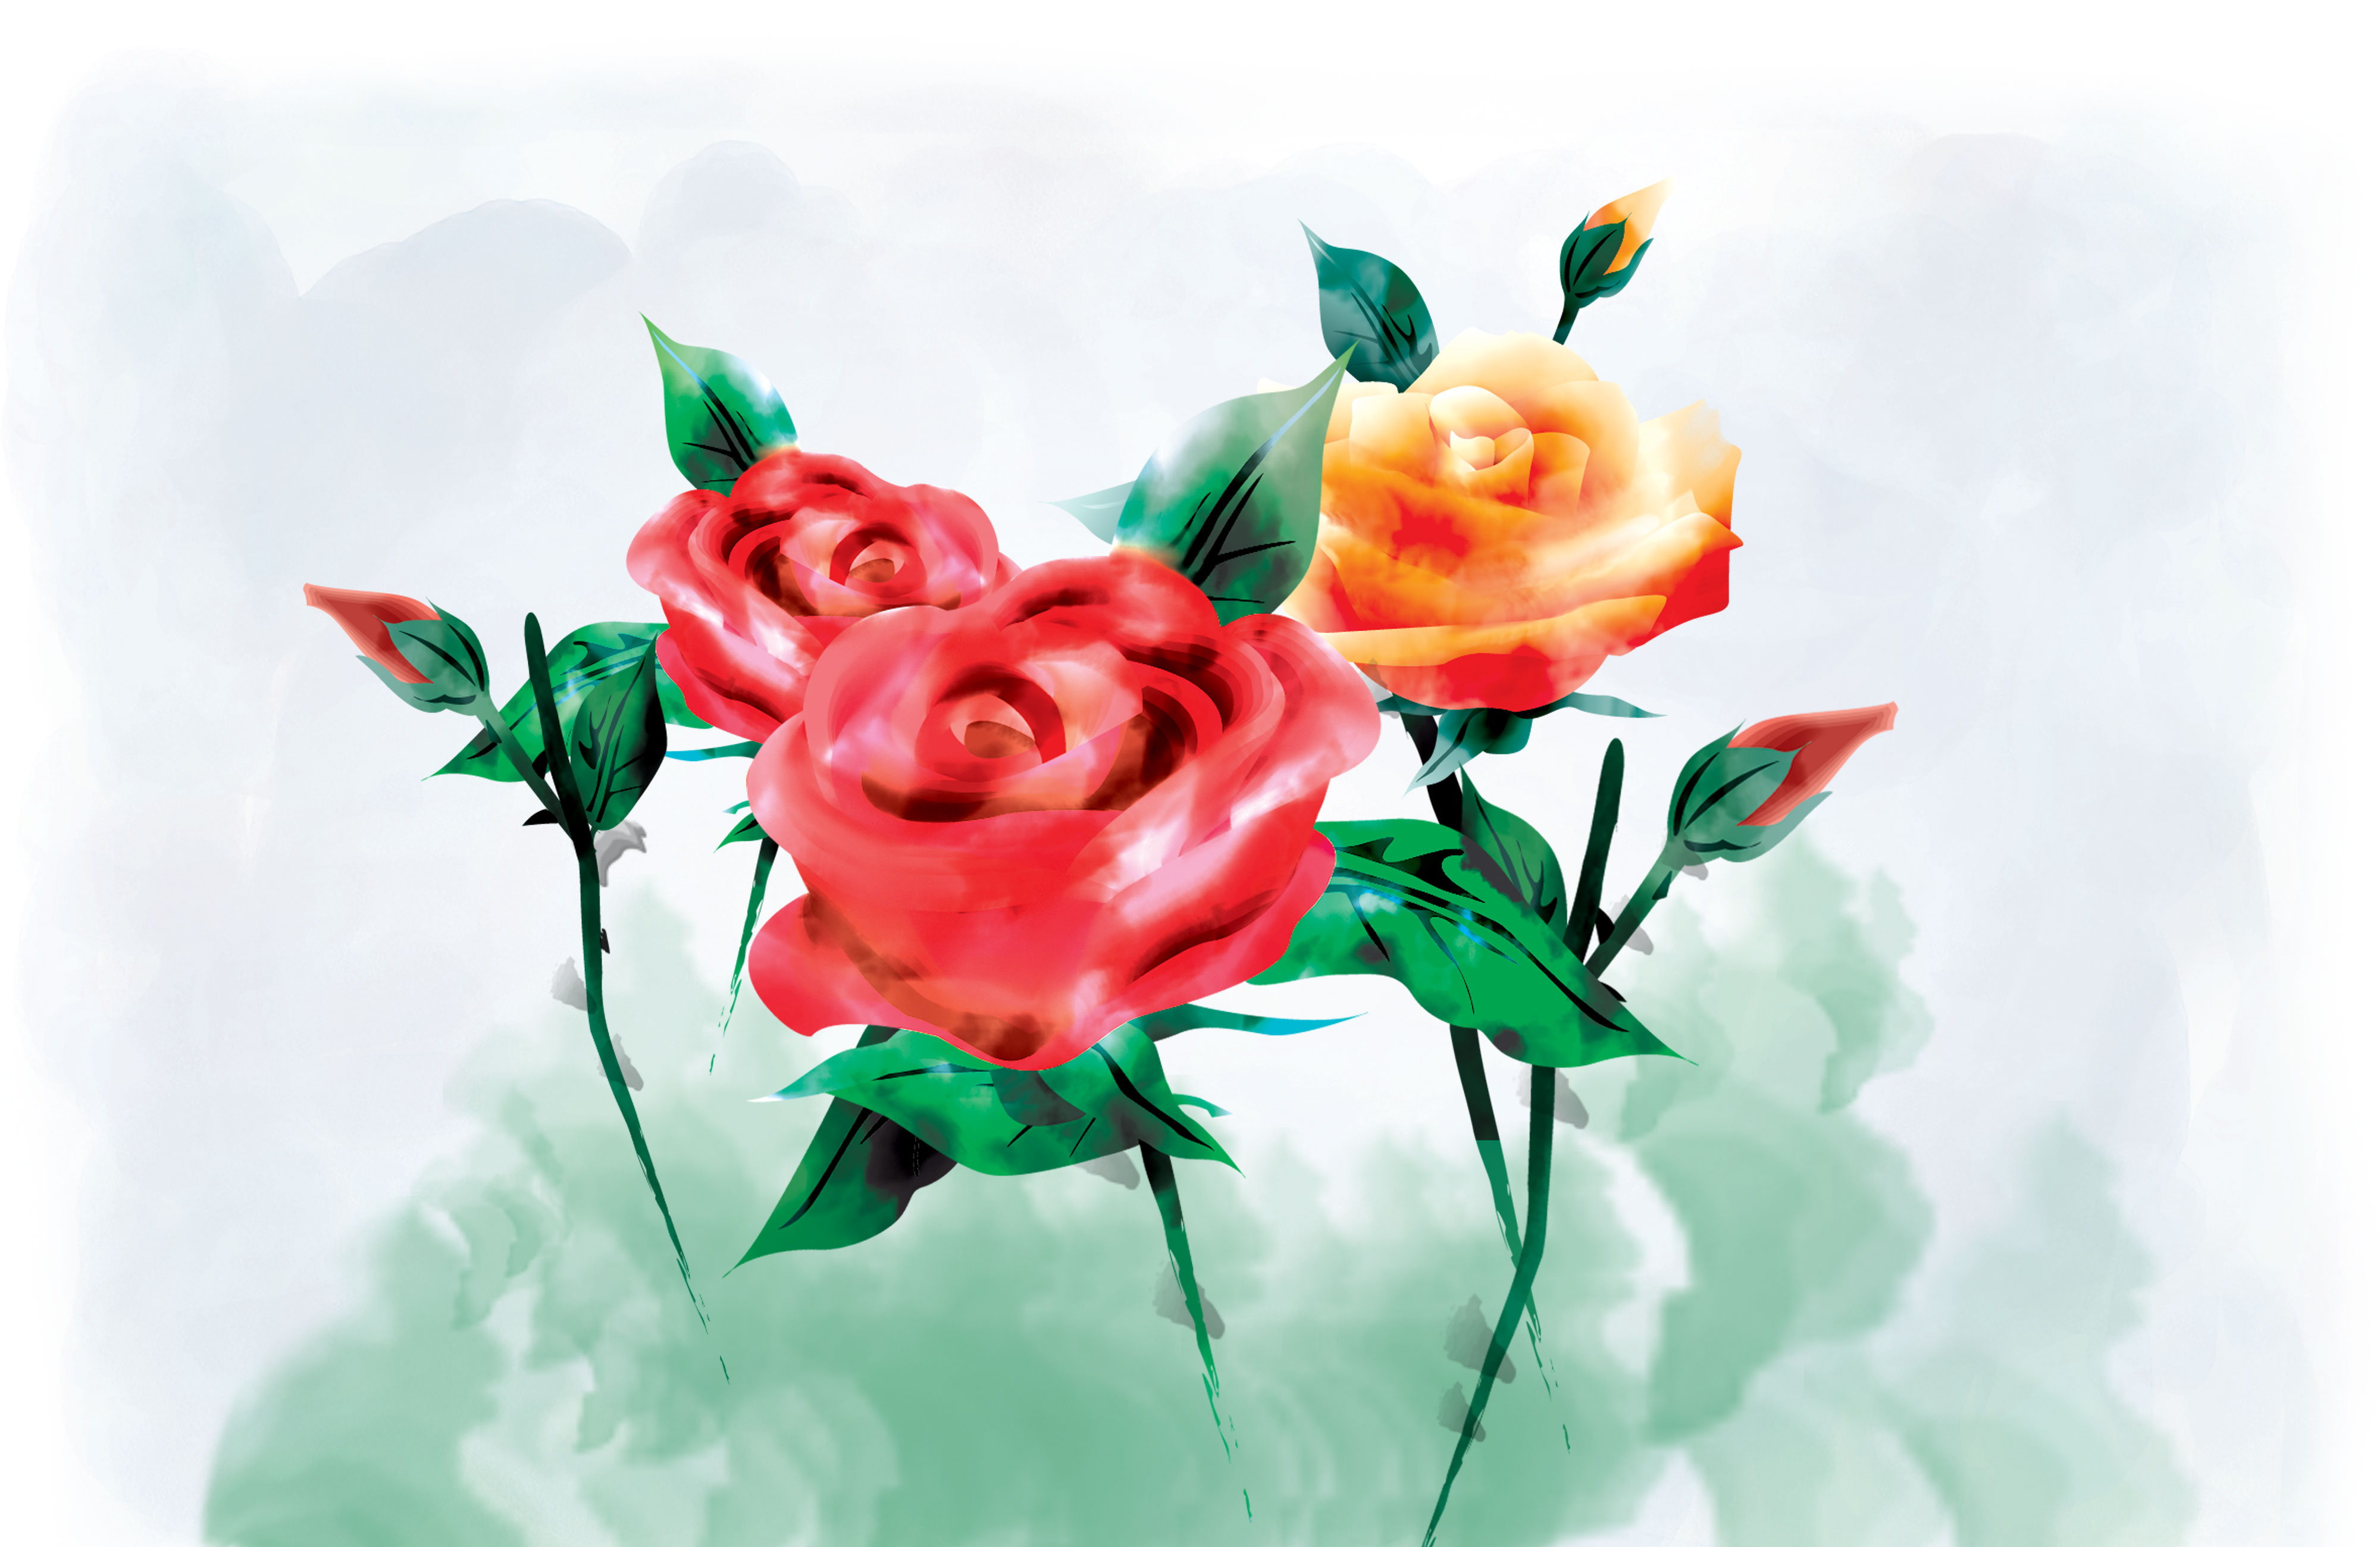 薔薇のイラスト見本-バラ・茎葉・水彩画風